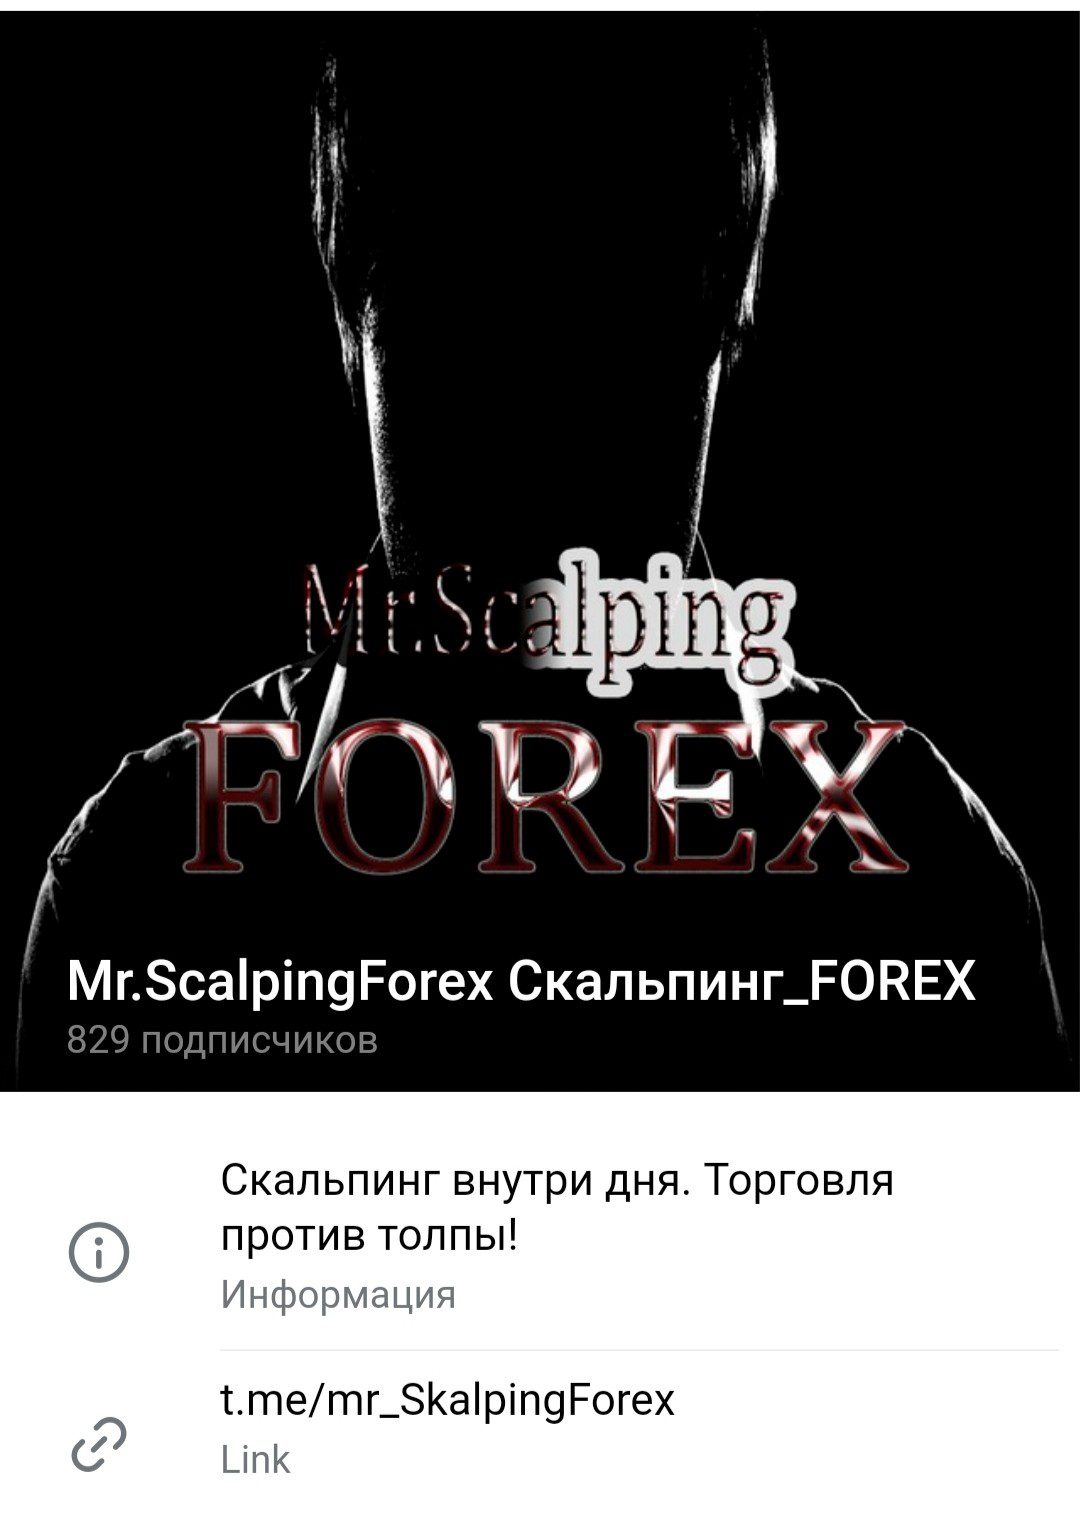 Телеграм Mr.Scalping Forex